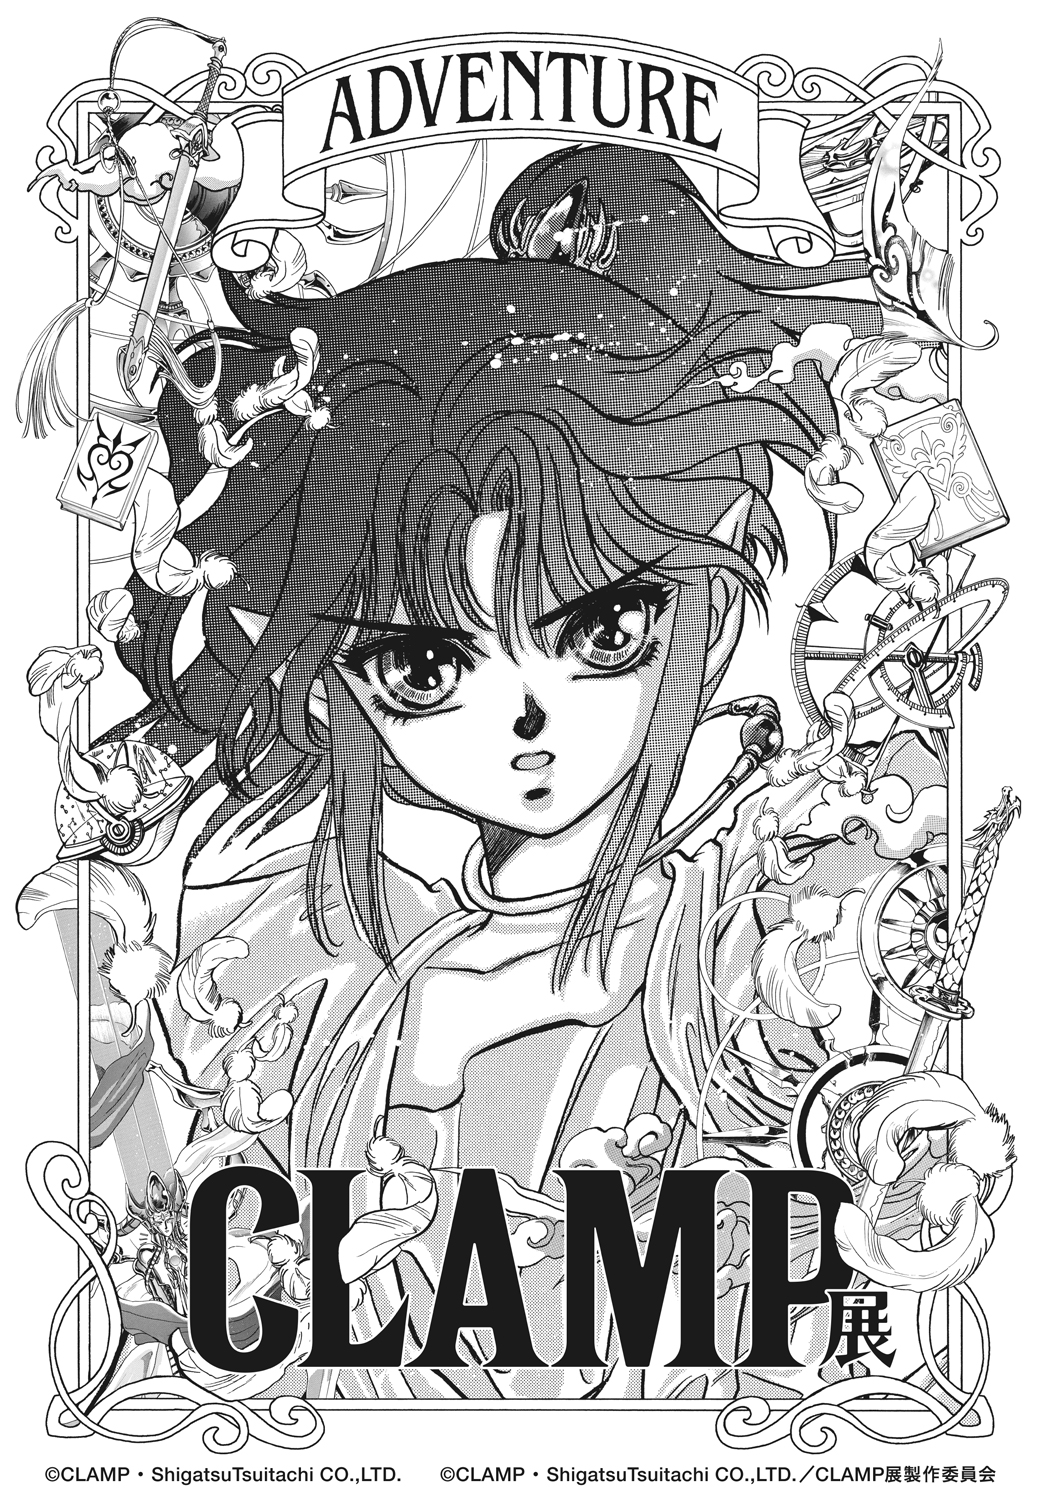 CLAMP展 | 「A」は、ADVENTURE。CLAMPの、物語をたどって。 | ©CLAMP・ShigatsuTsuitachi CO.,LTD. ©CLAMP・ShigatsuTsuitachi CO.,LTD. / CLAMP展製作委員会